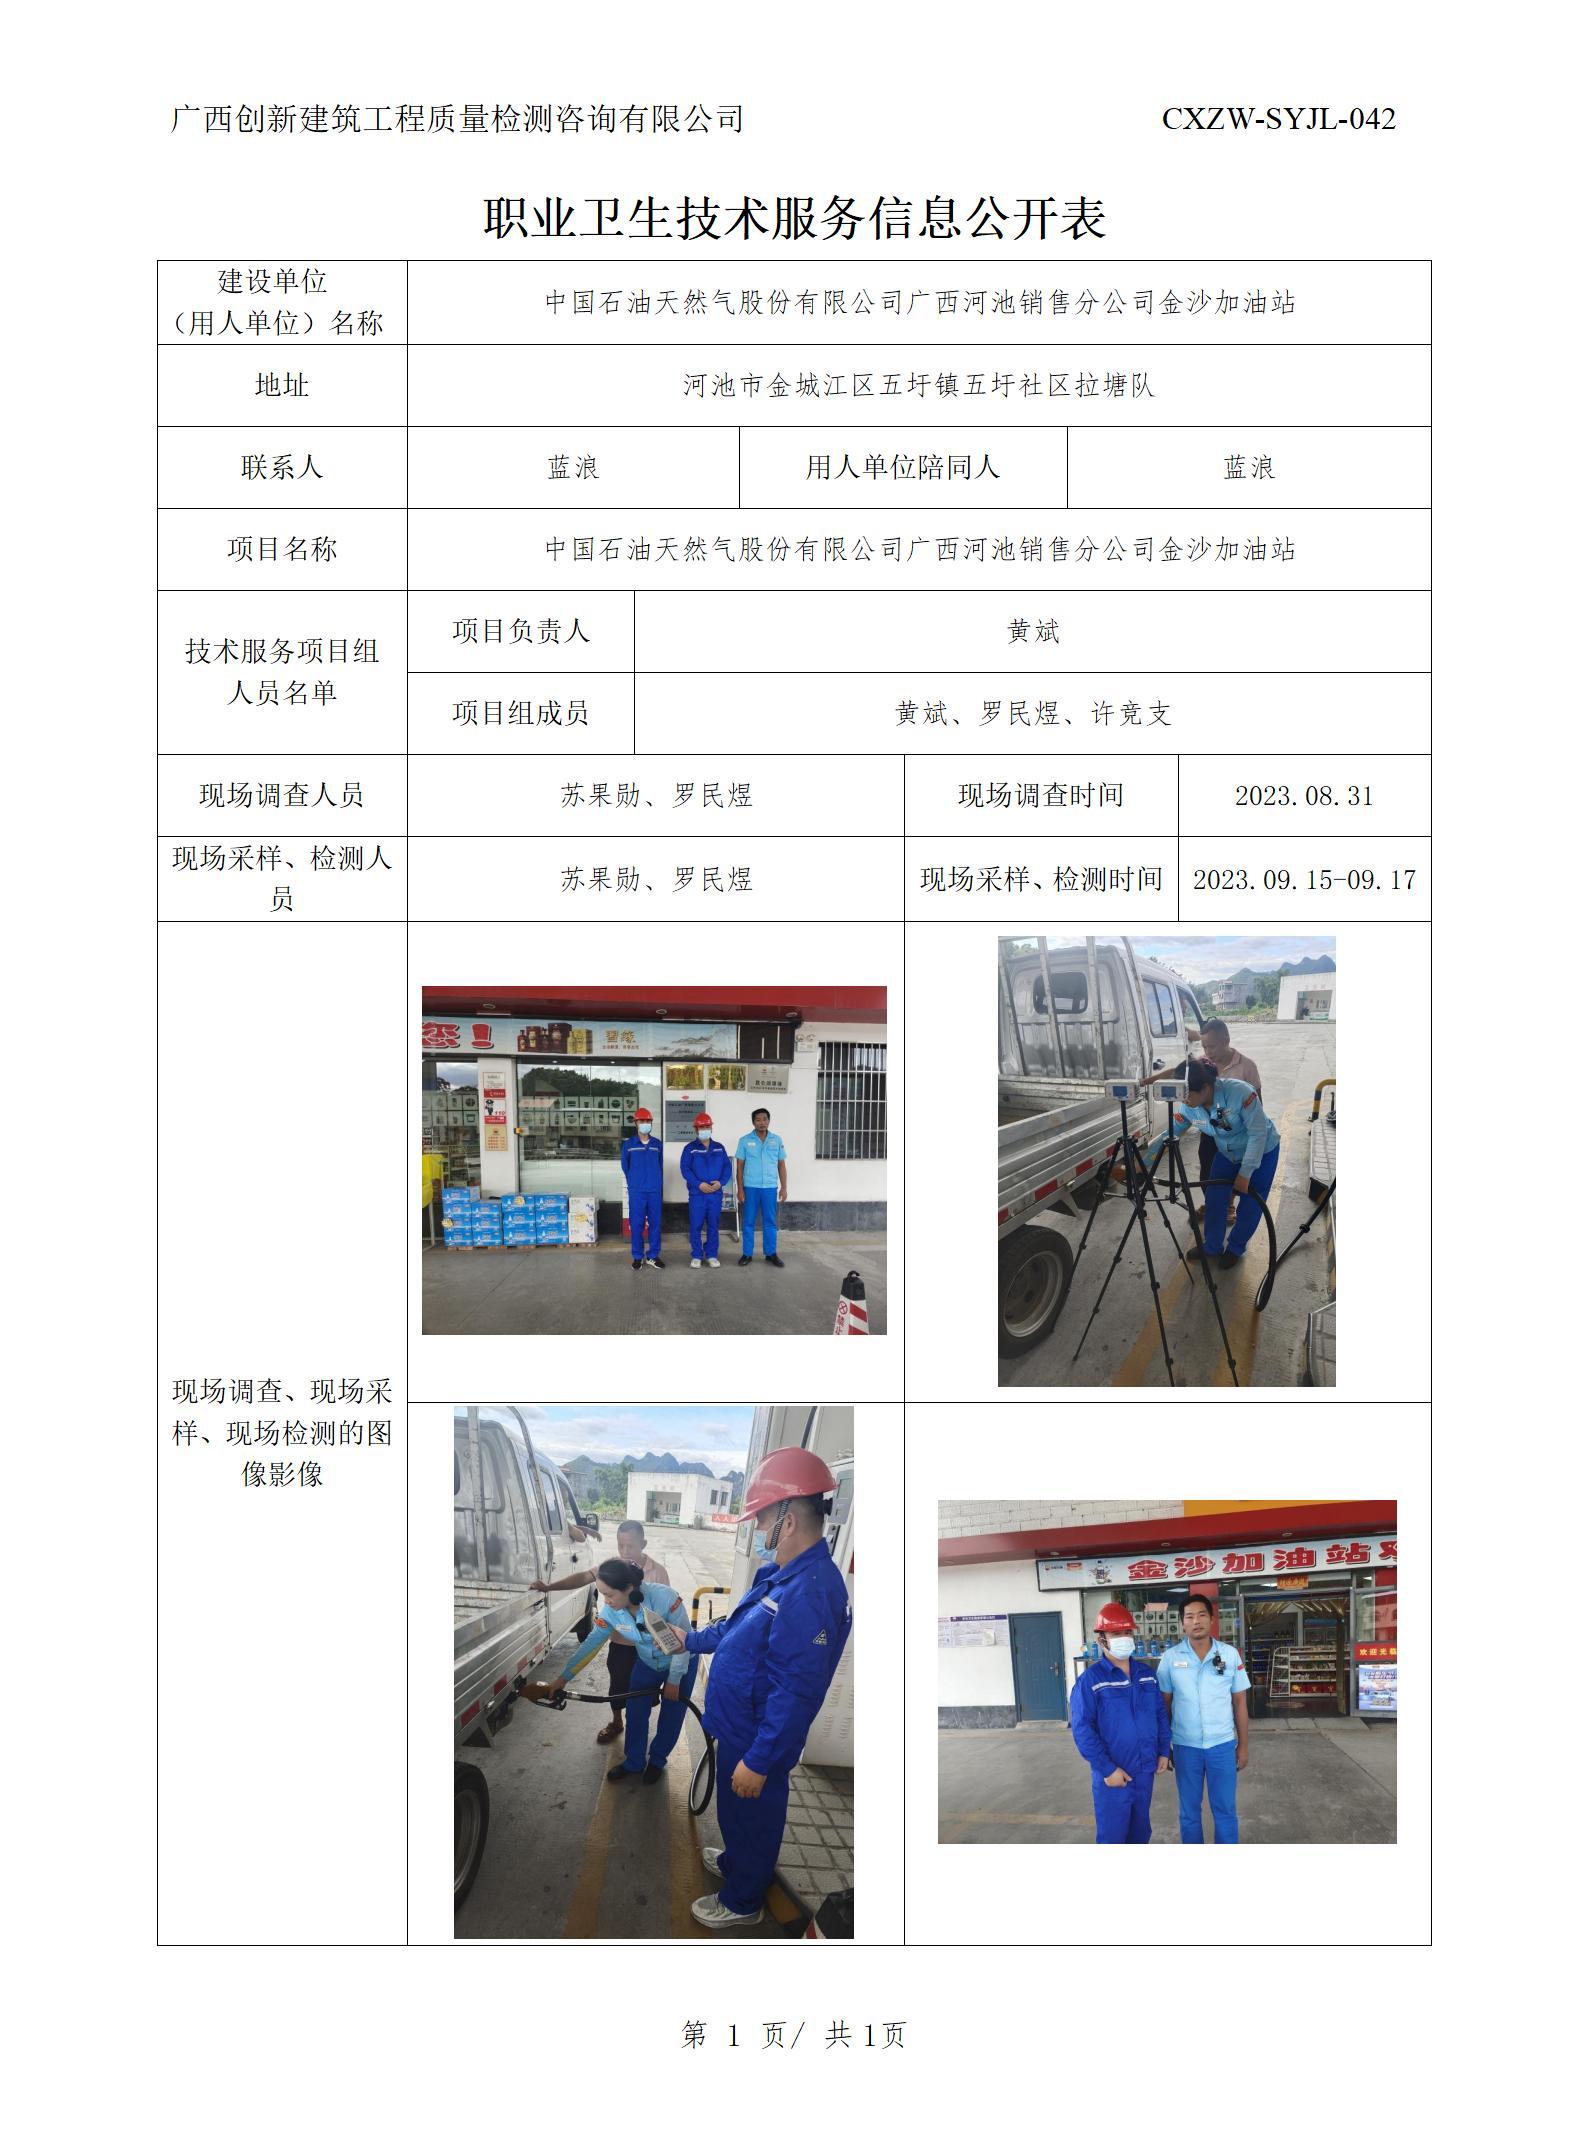 【职业卫生信息公开】中国石油天然气股份有限公司广西河池销售分公司金沙加油站